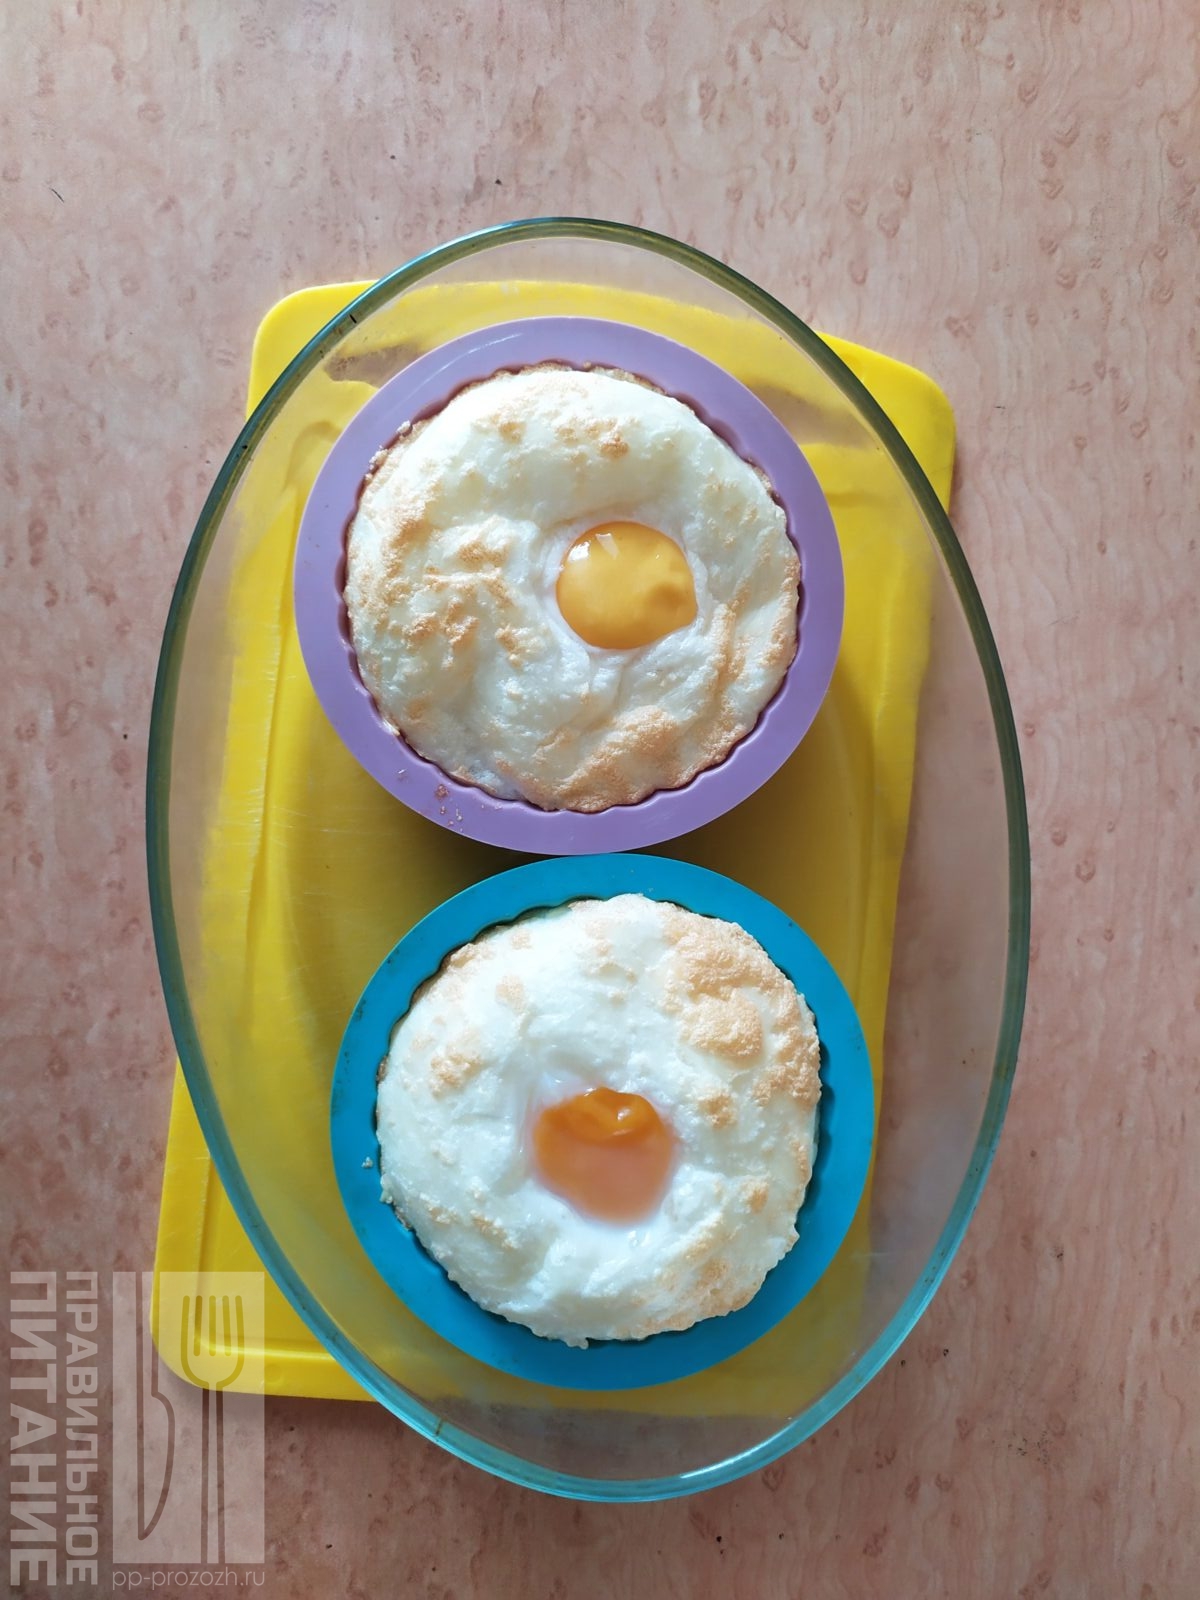 8 блюд из яиц, о которых мы забываем, а зря